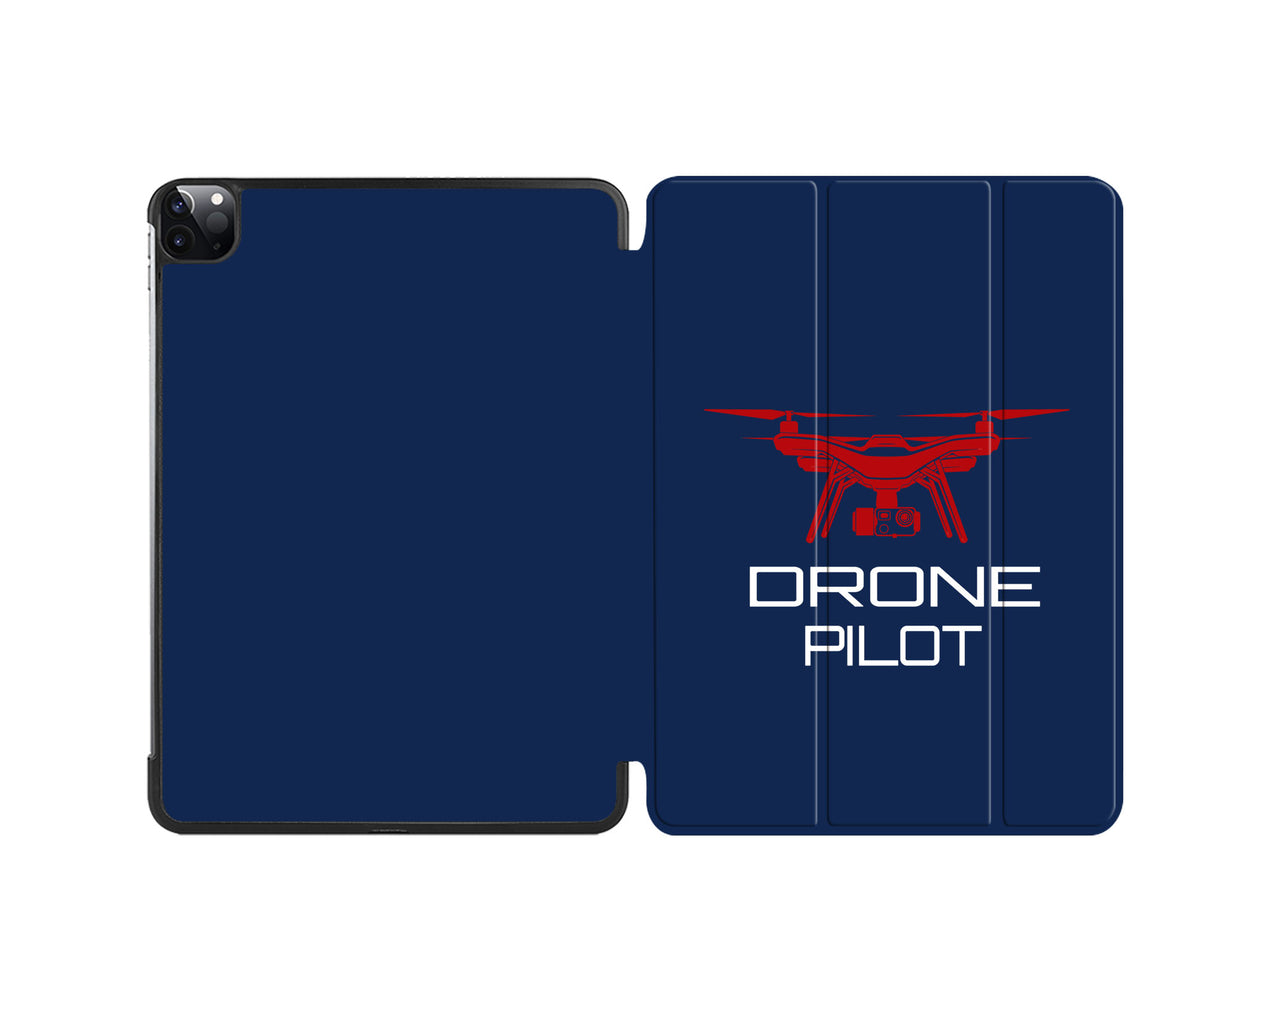 Drone Pilot Designed iPad Cases